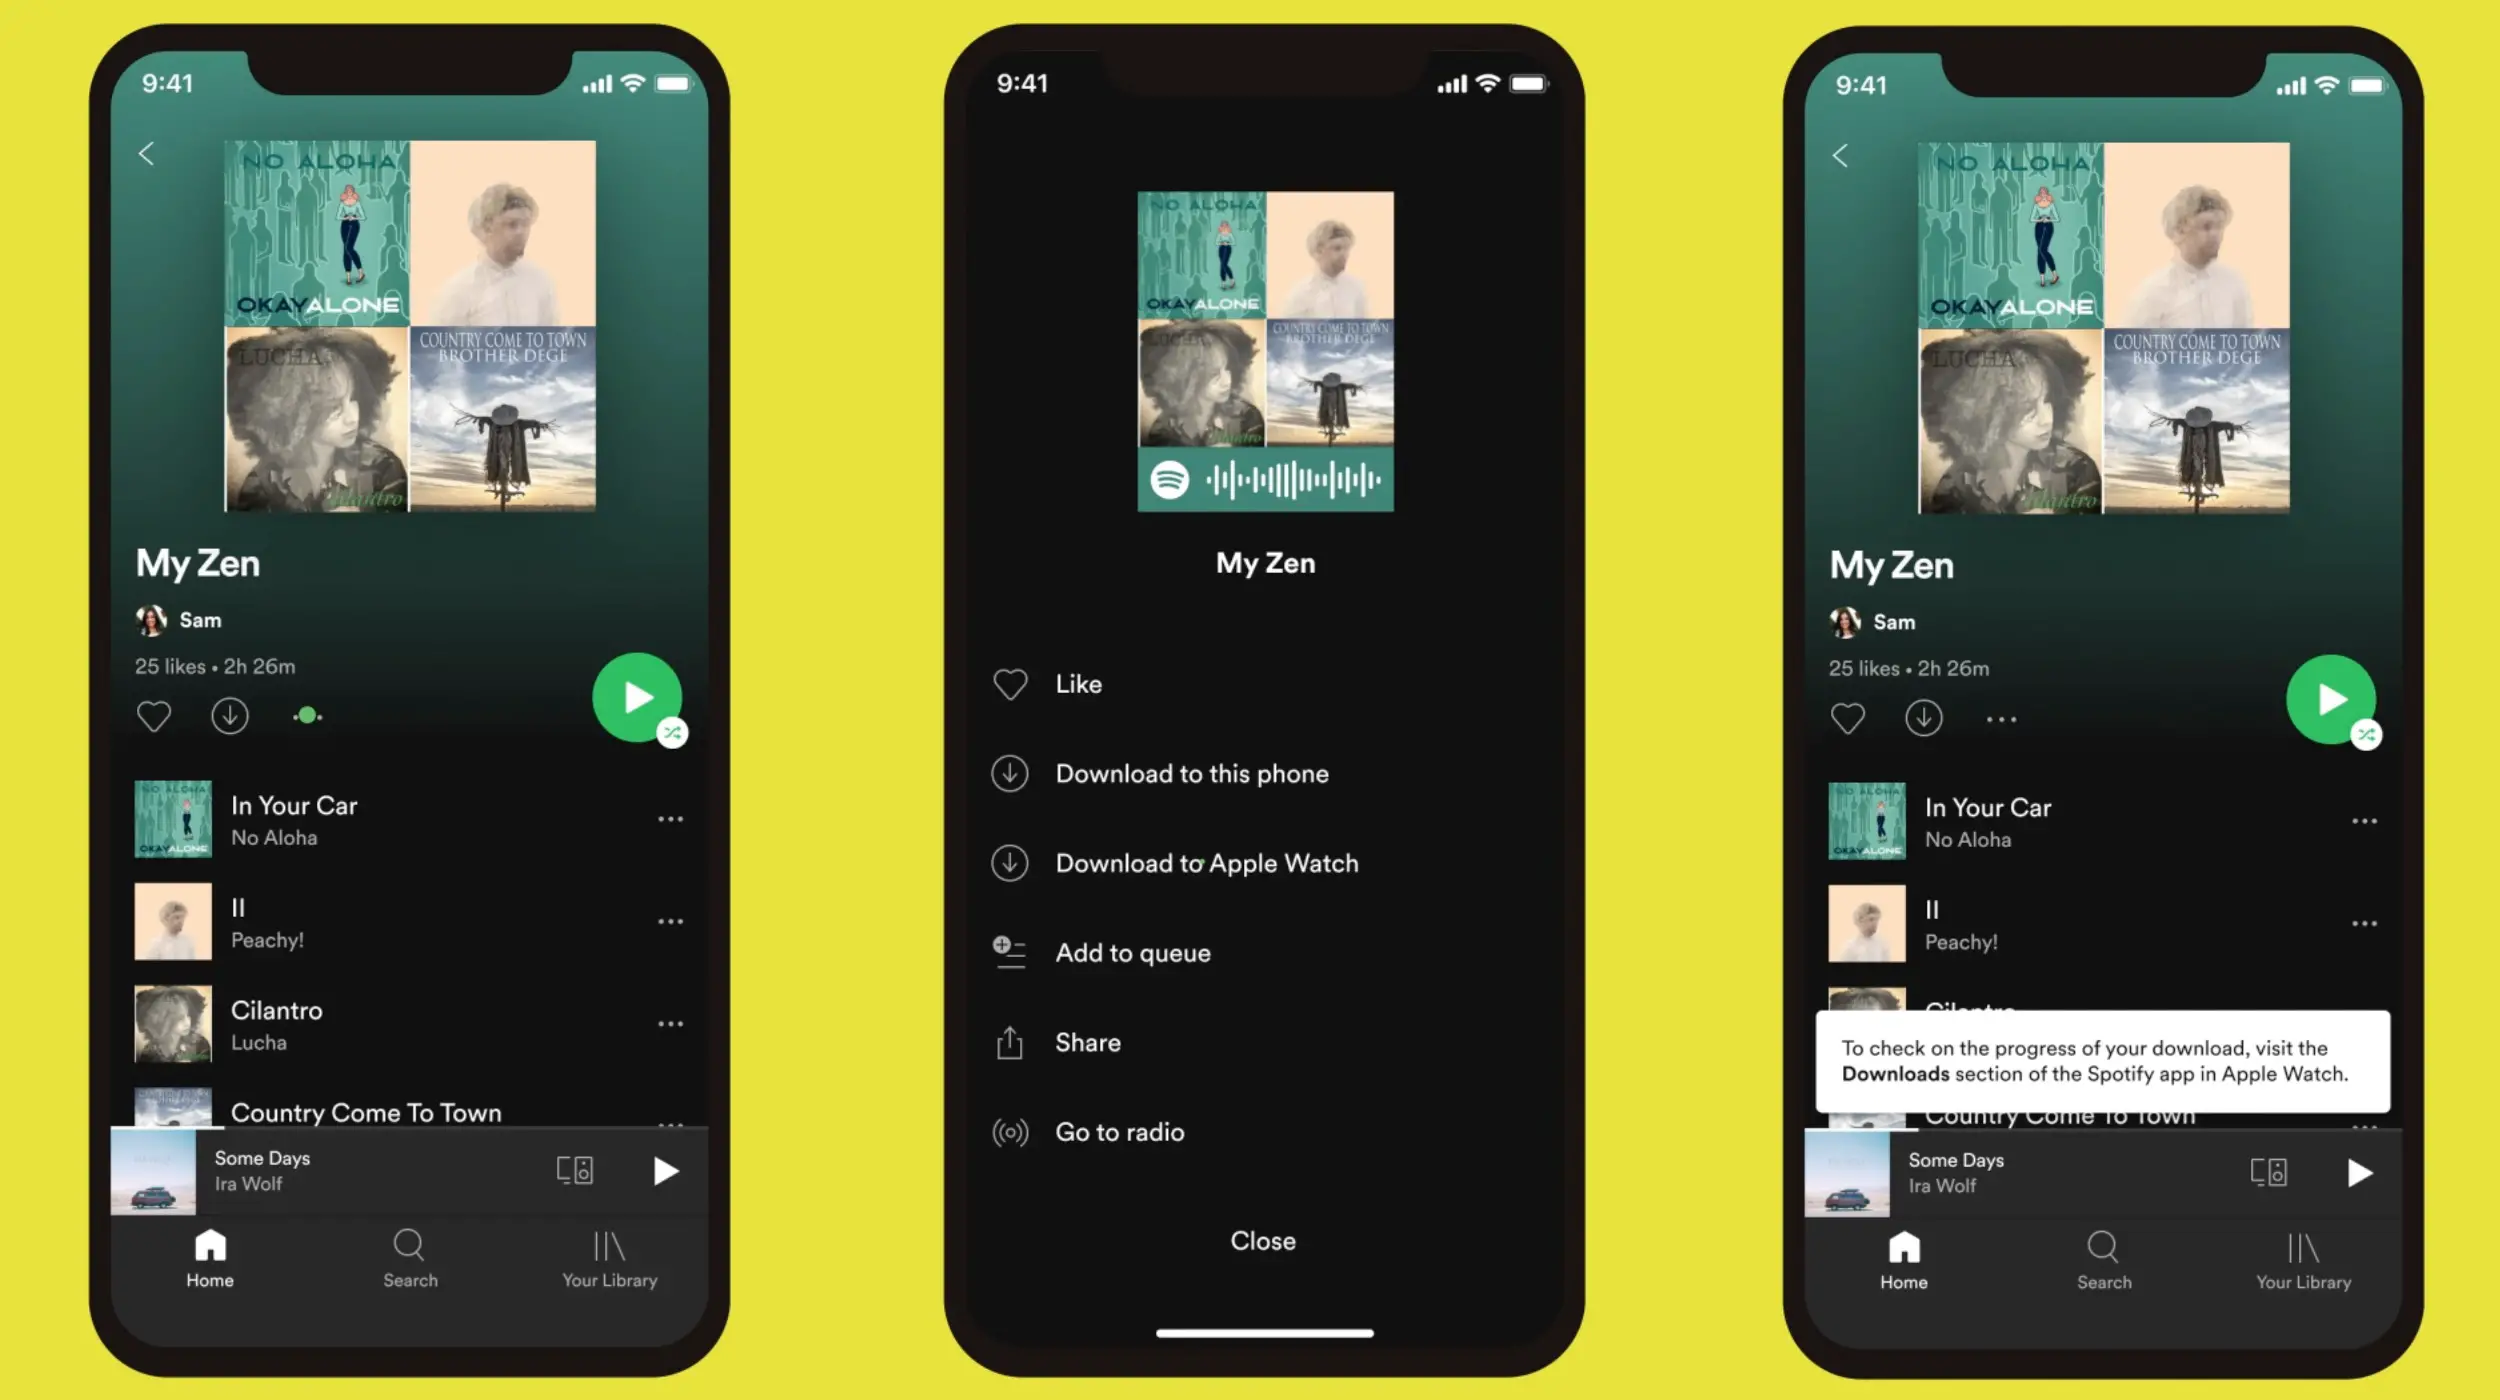 Un'immagine che mostra Spotify per iPhone su sfondo giallo.  L'iPhone viene mostrato con Spotify in modalità offline con il "Aggiungi ad Apple Watch" comando selezionato nell'interfaccia.